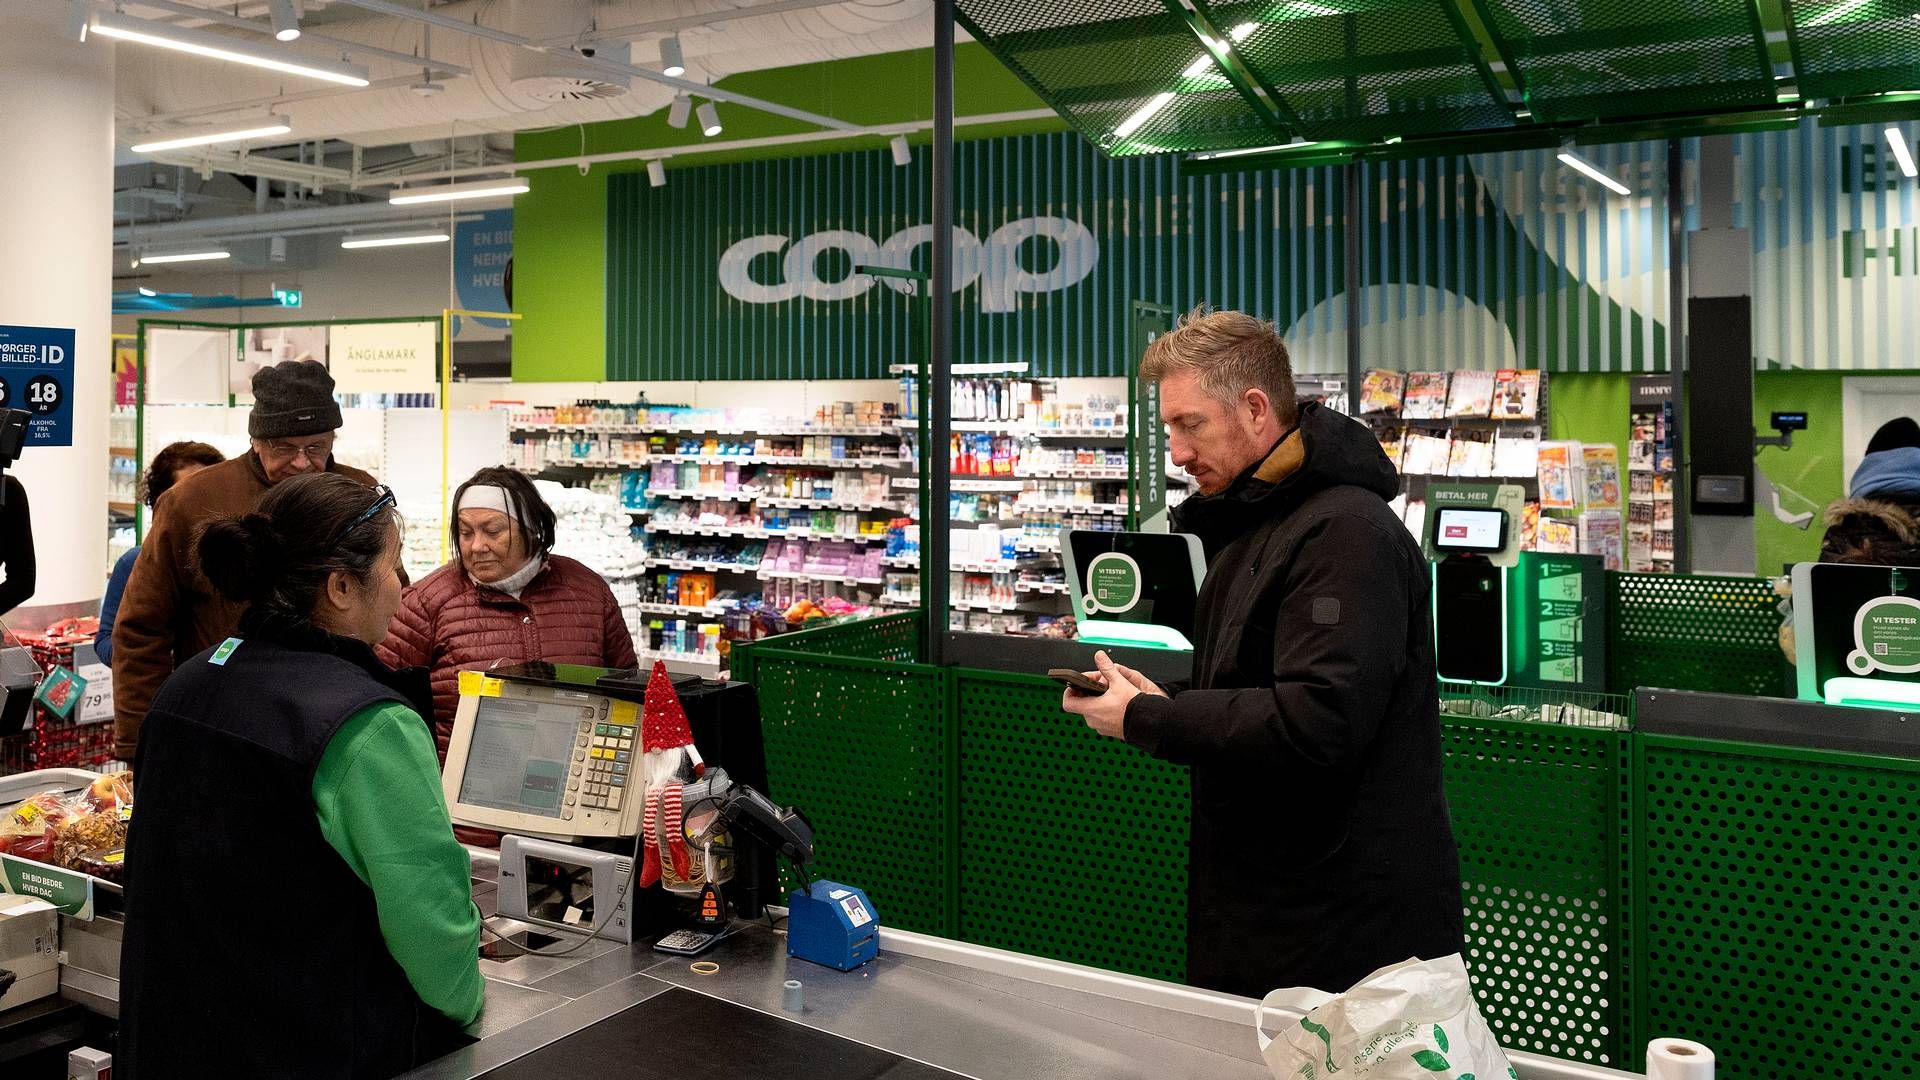 Lønstigninger giver danskerne mere købekraft og sender forbruget i vejret, vurderer Danske Bank. | Foto: Finn Frandsen/Ritzau Scanpix